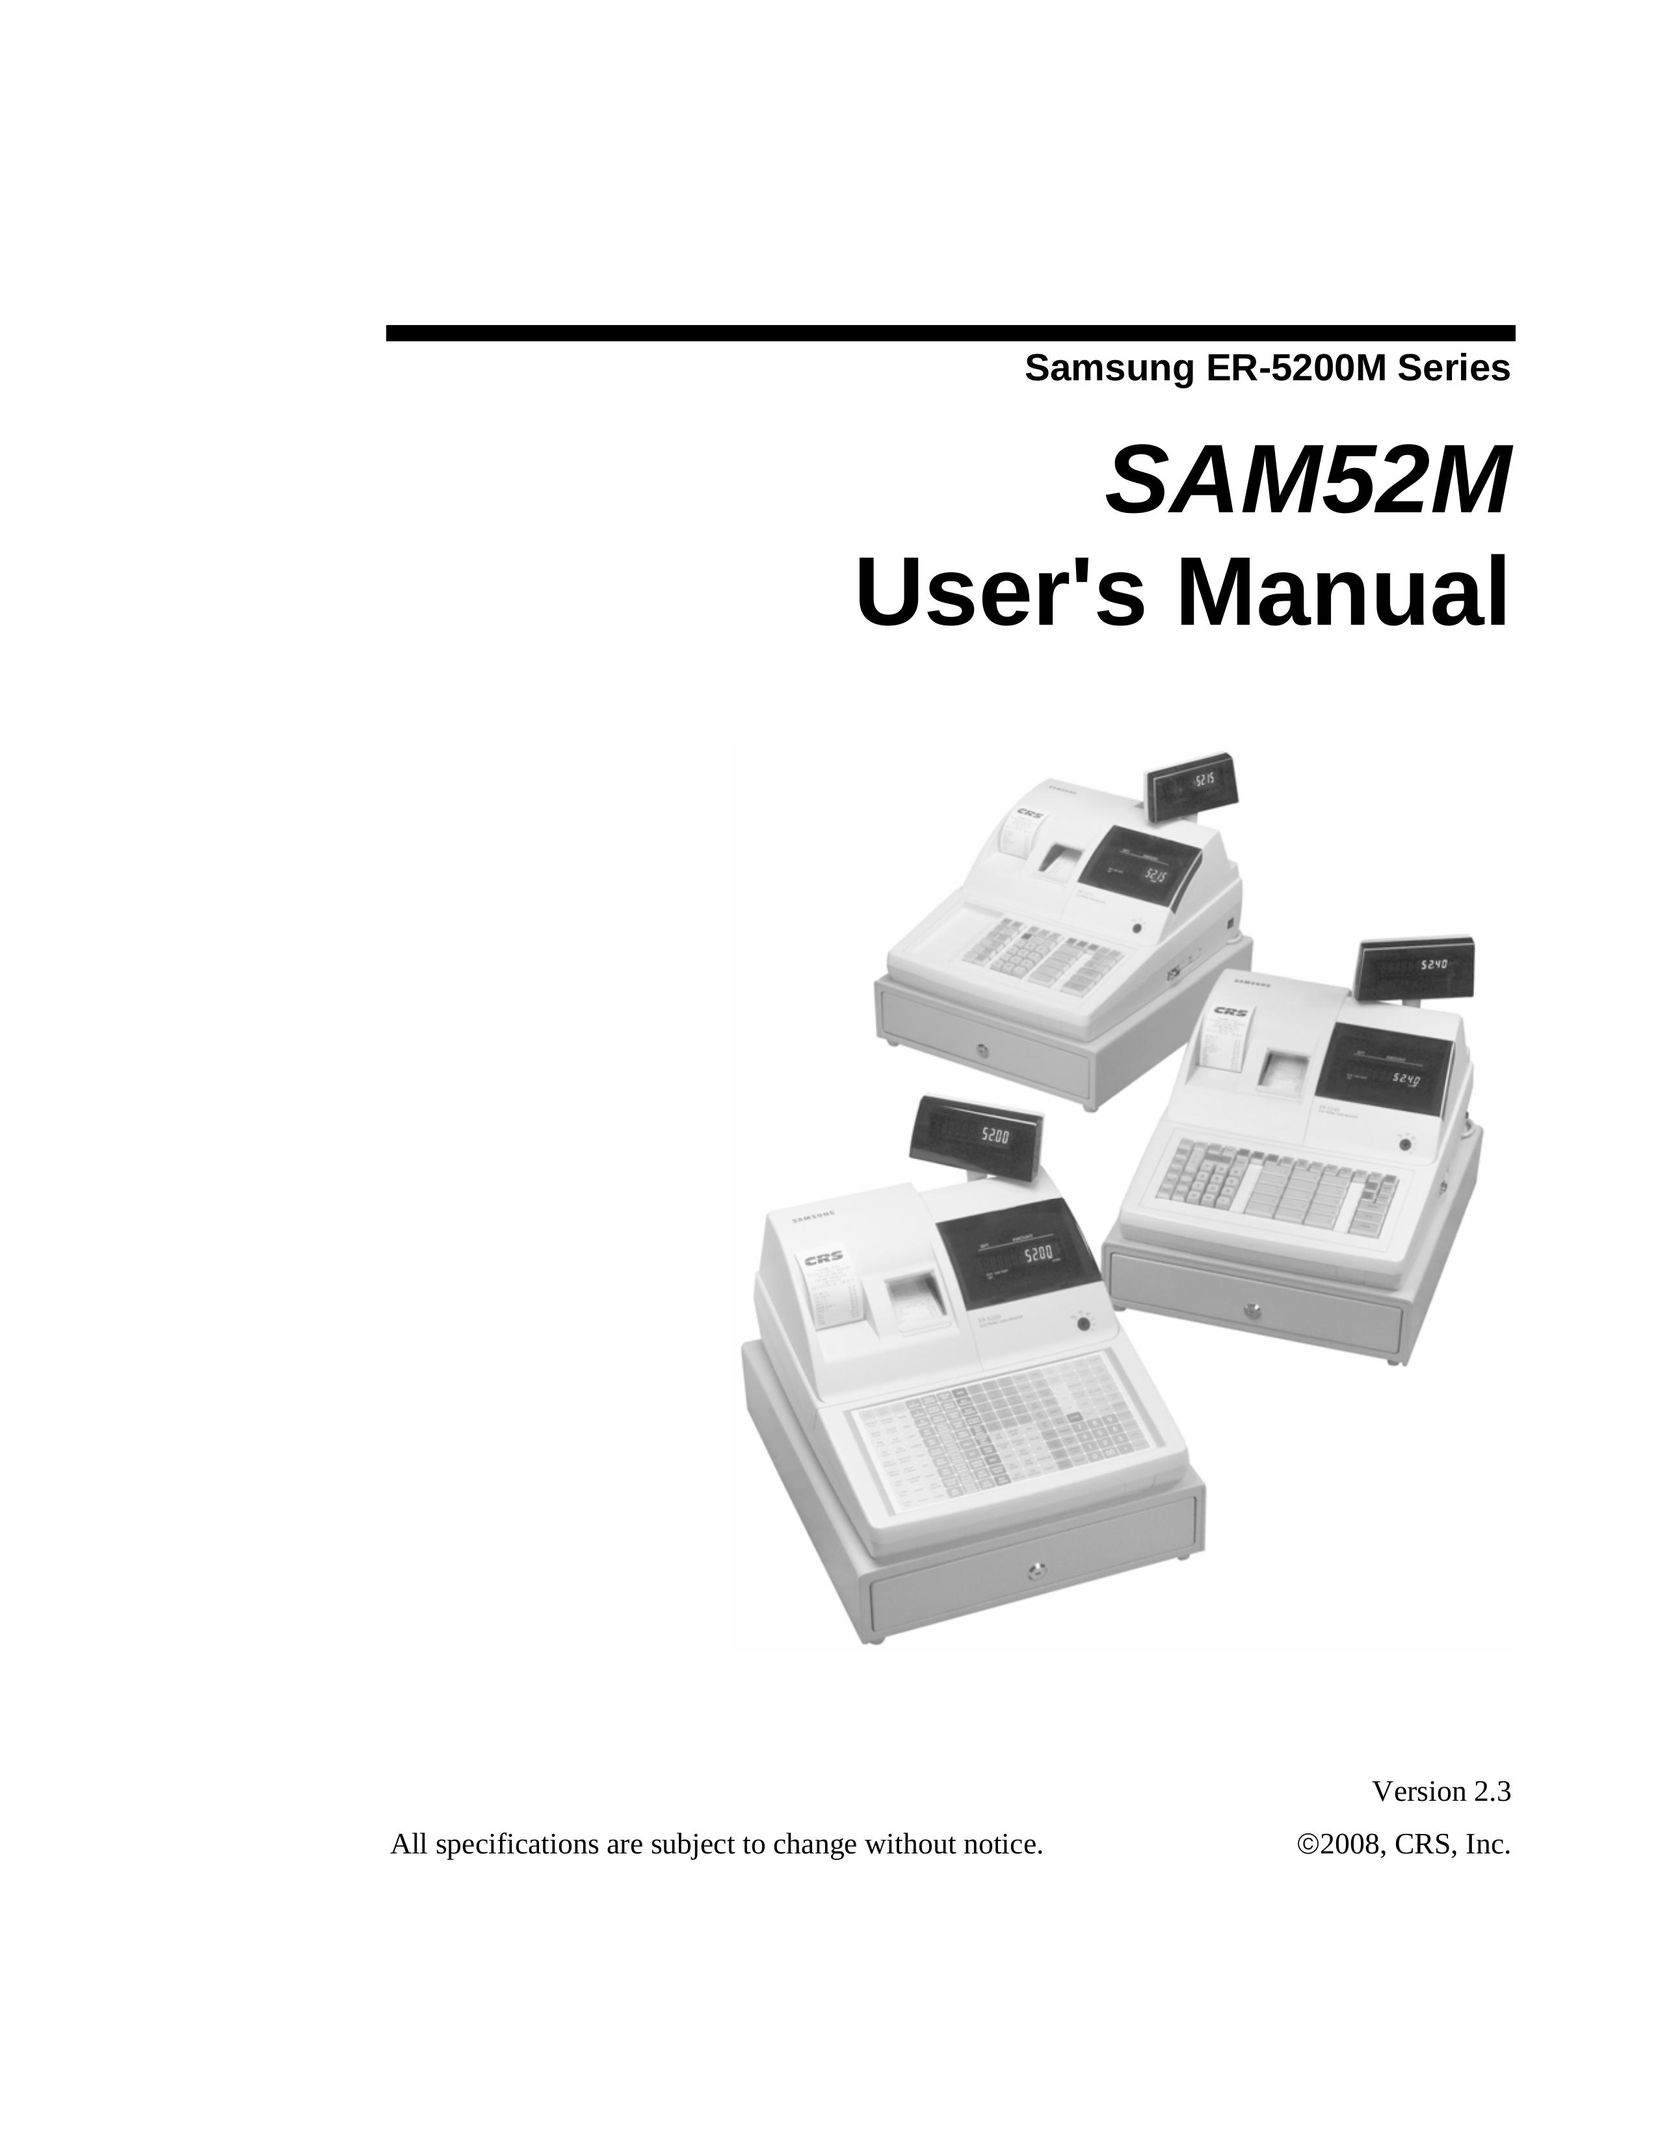 Samsung ER-5200M Cash Register User Manual